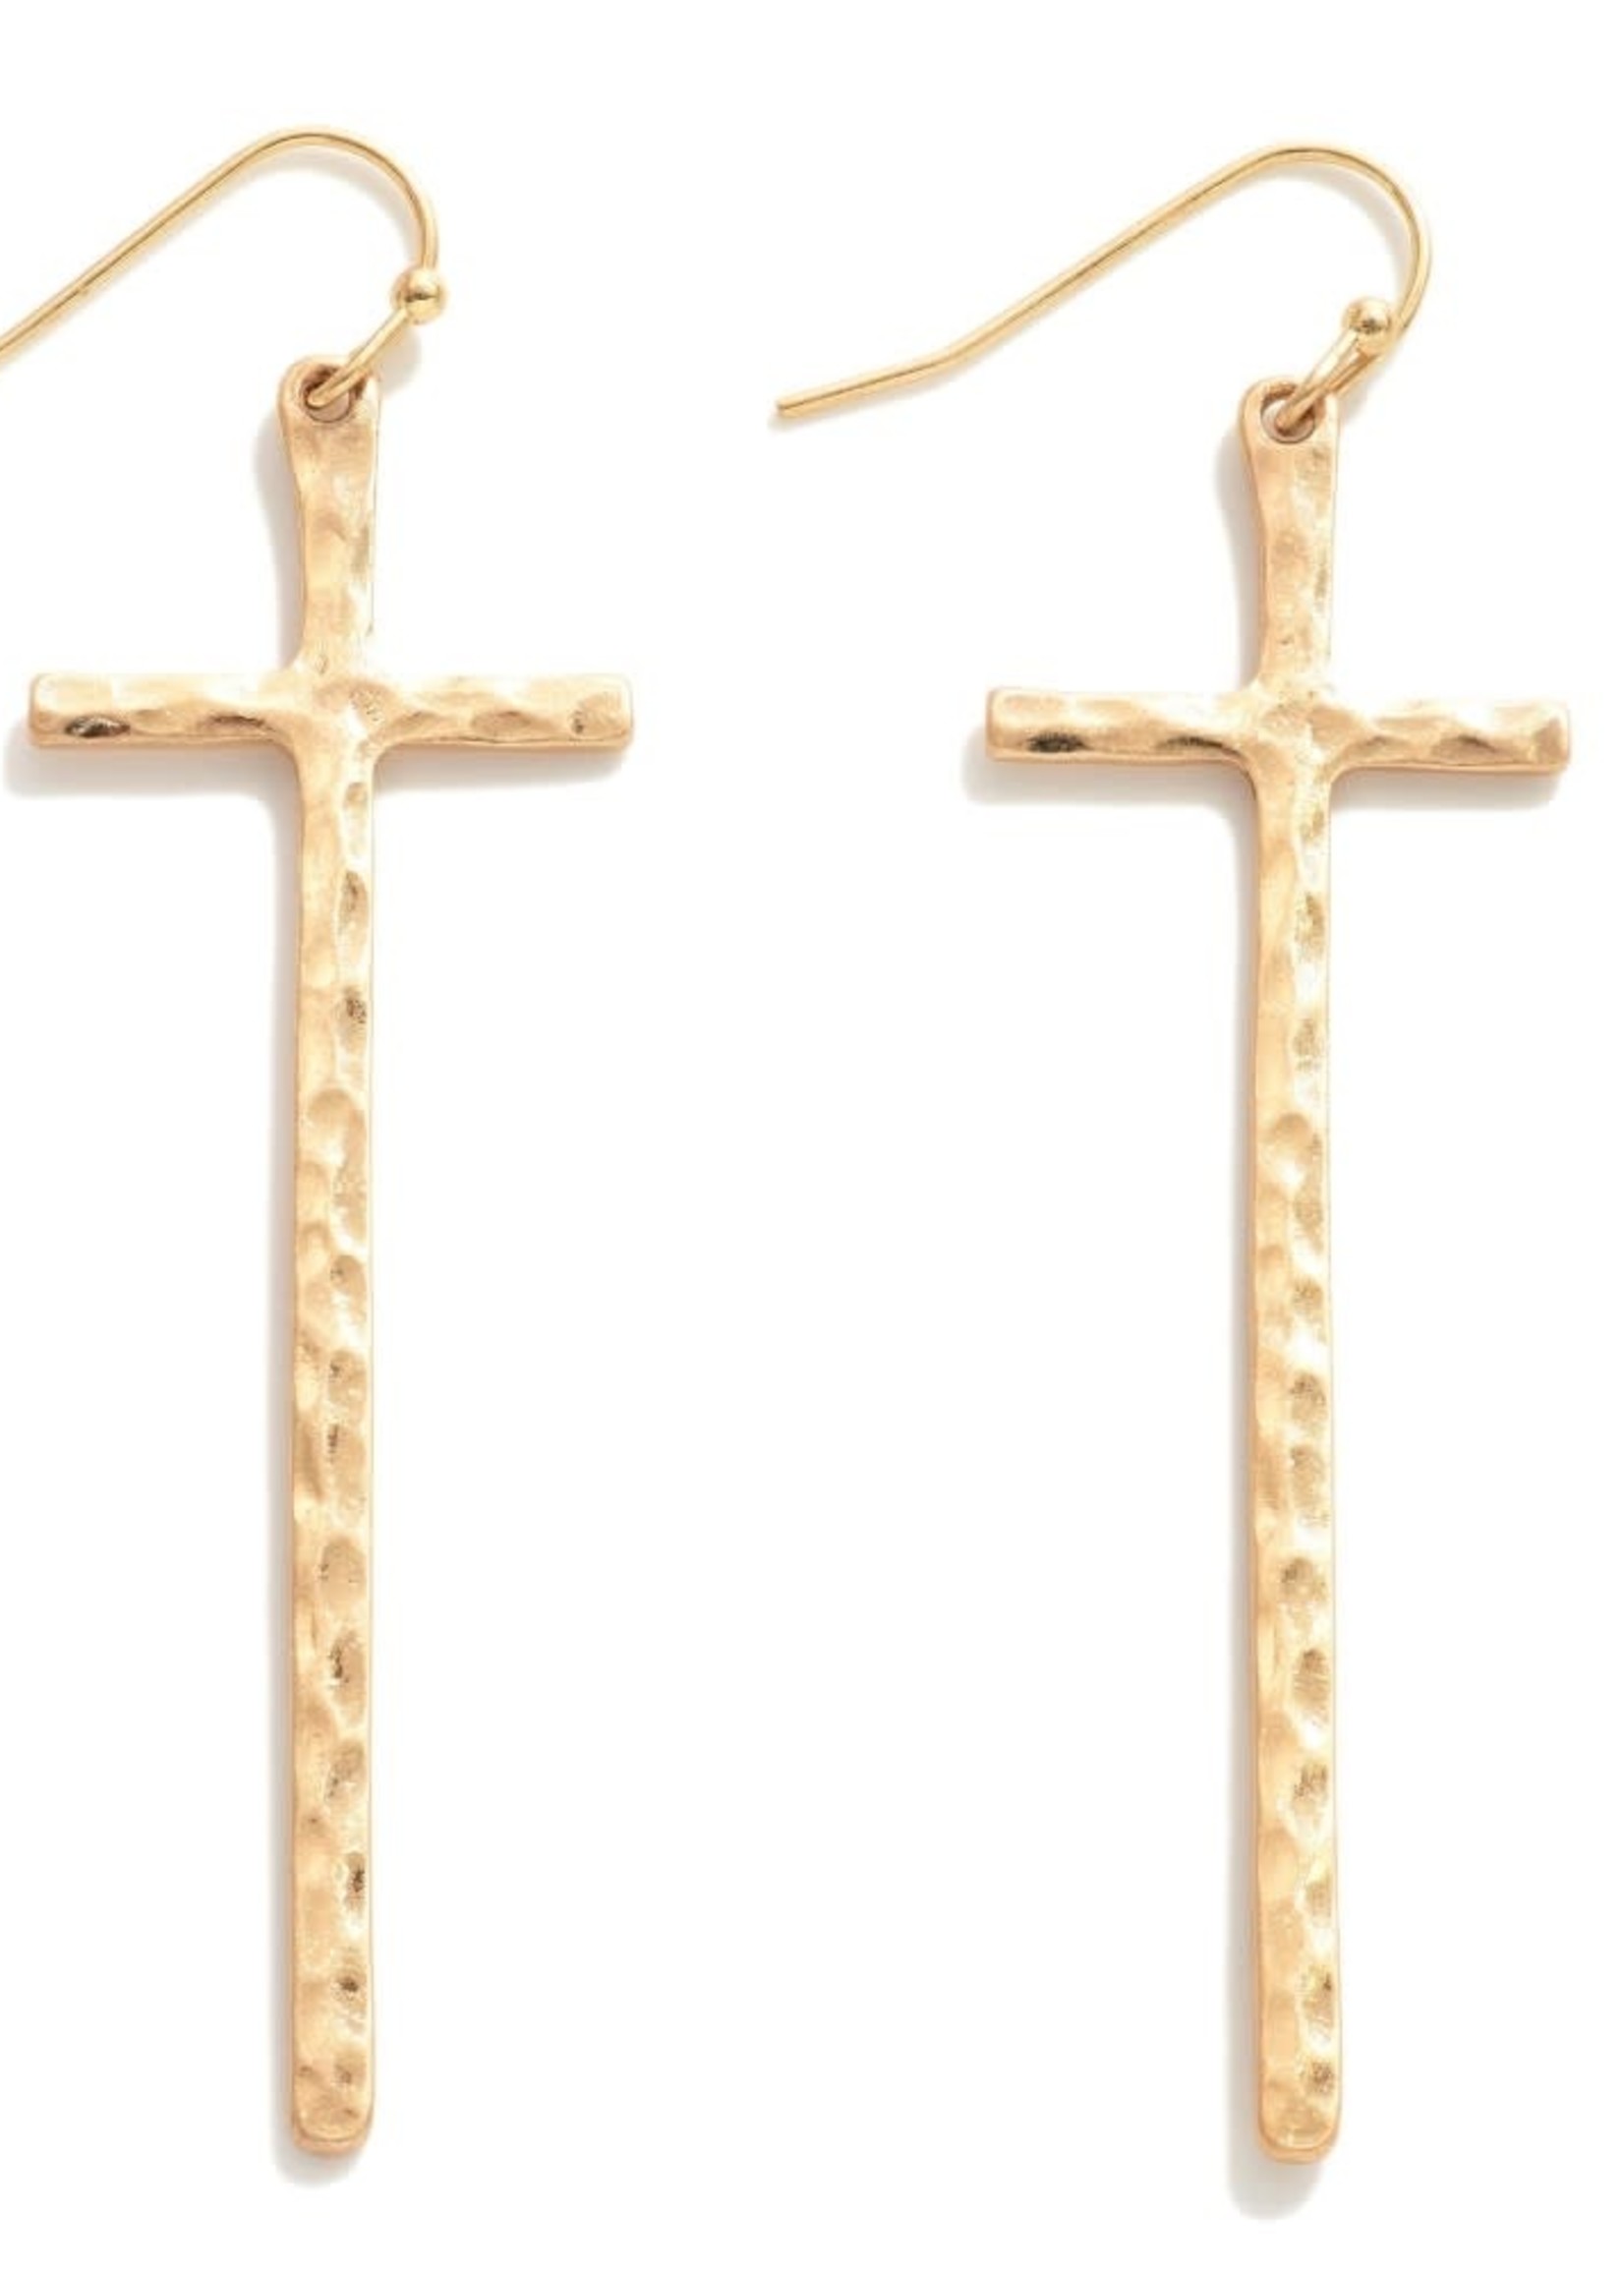 Hammered Long Metal Cross Earrings